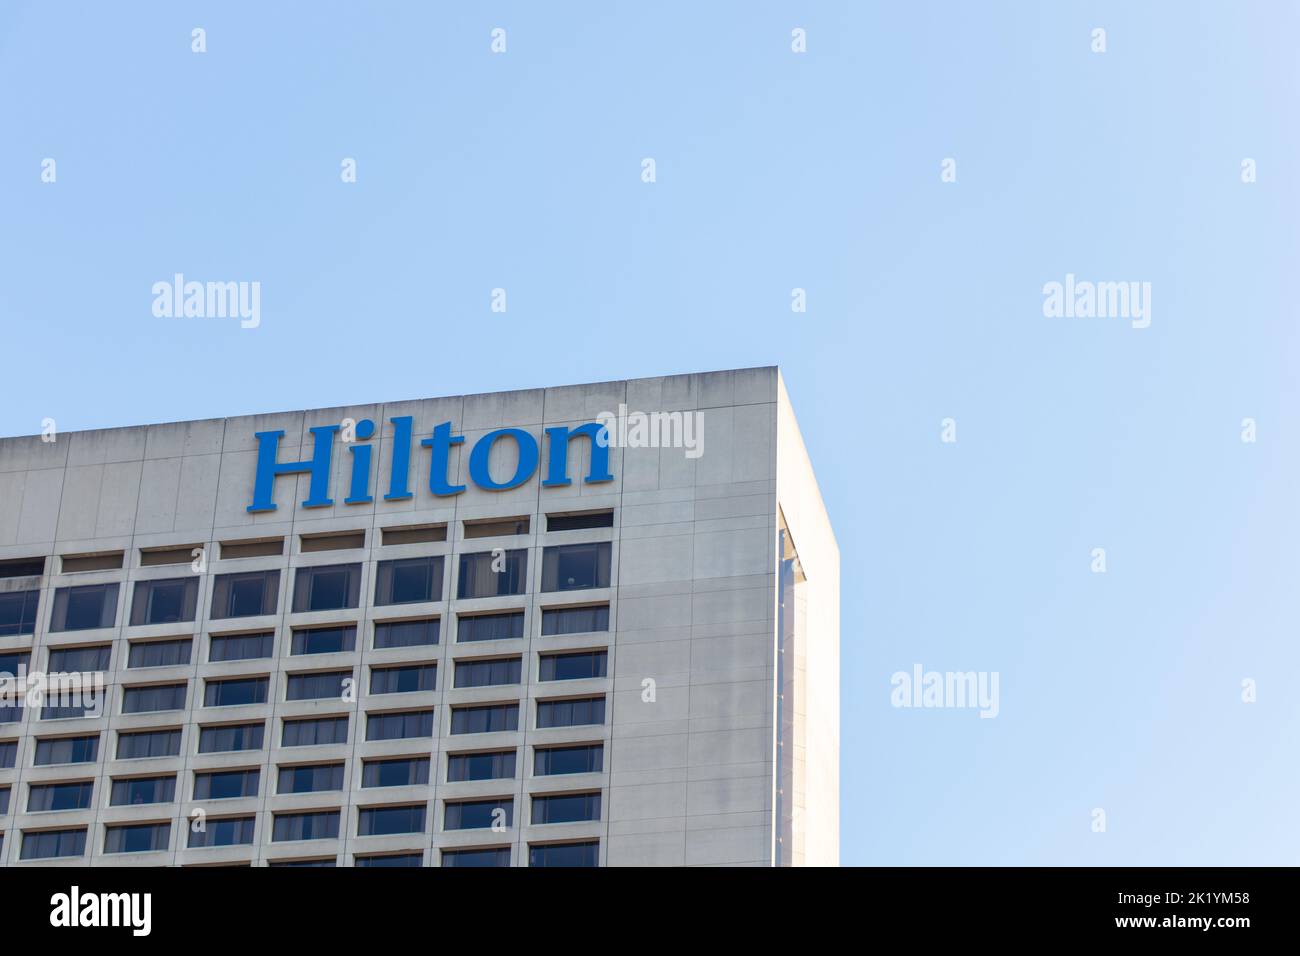 Le logo Hilton est situé au sommet d'un édifice du centre-ville de Toronto, vu par temps clair et ensoleillé. Banque D'Images